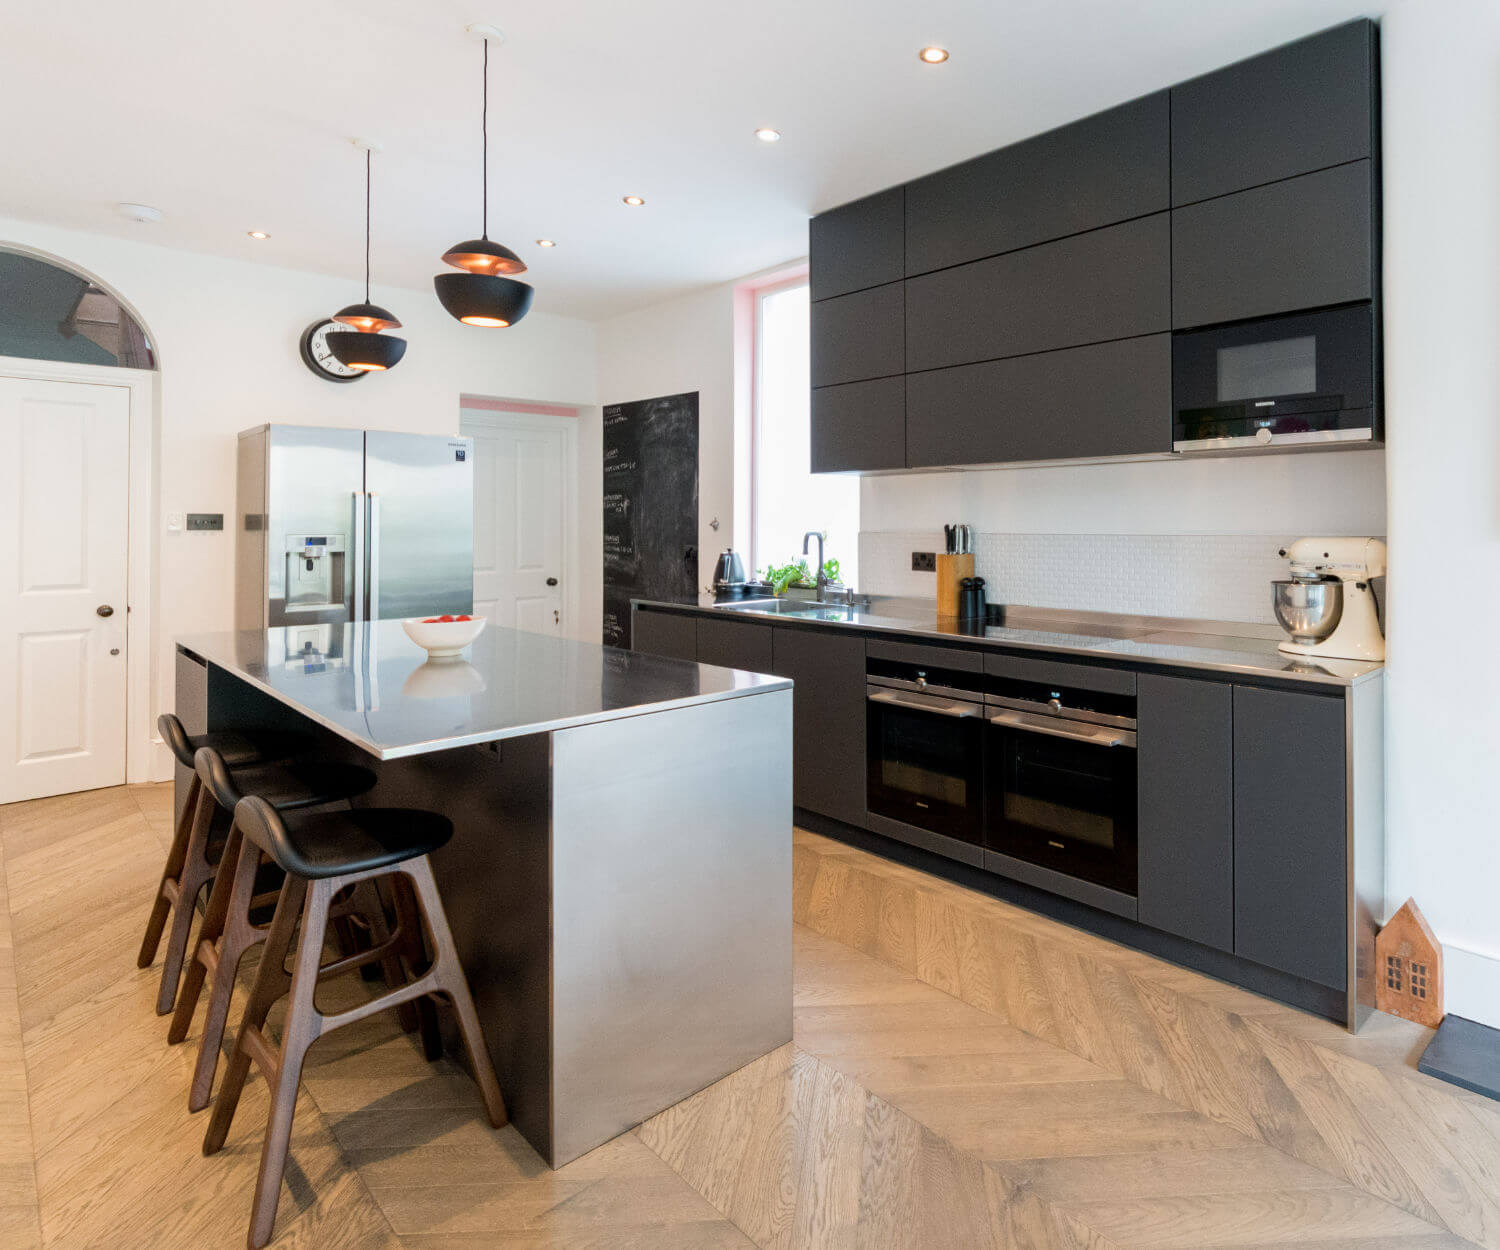 German kitchen with matt black glass door fronts and stainless steel worktop